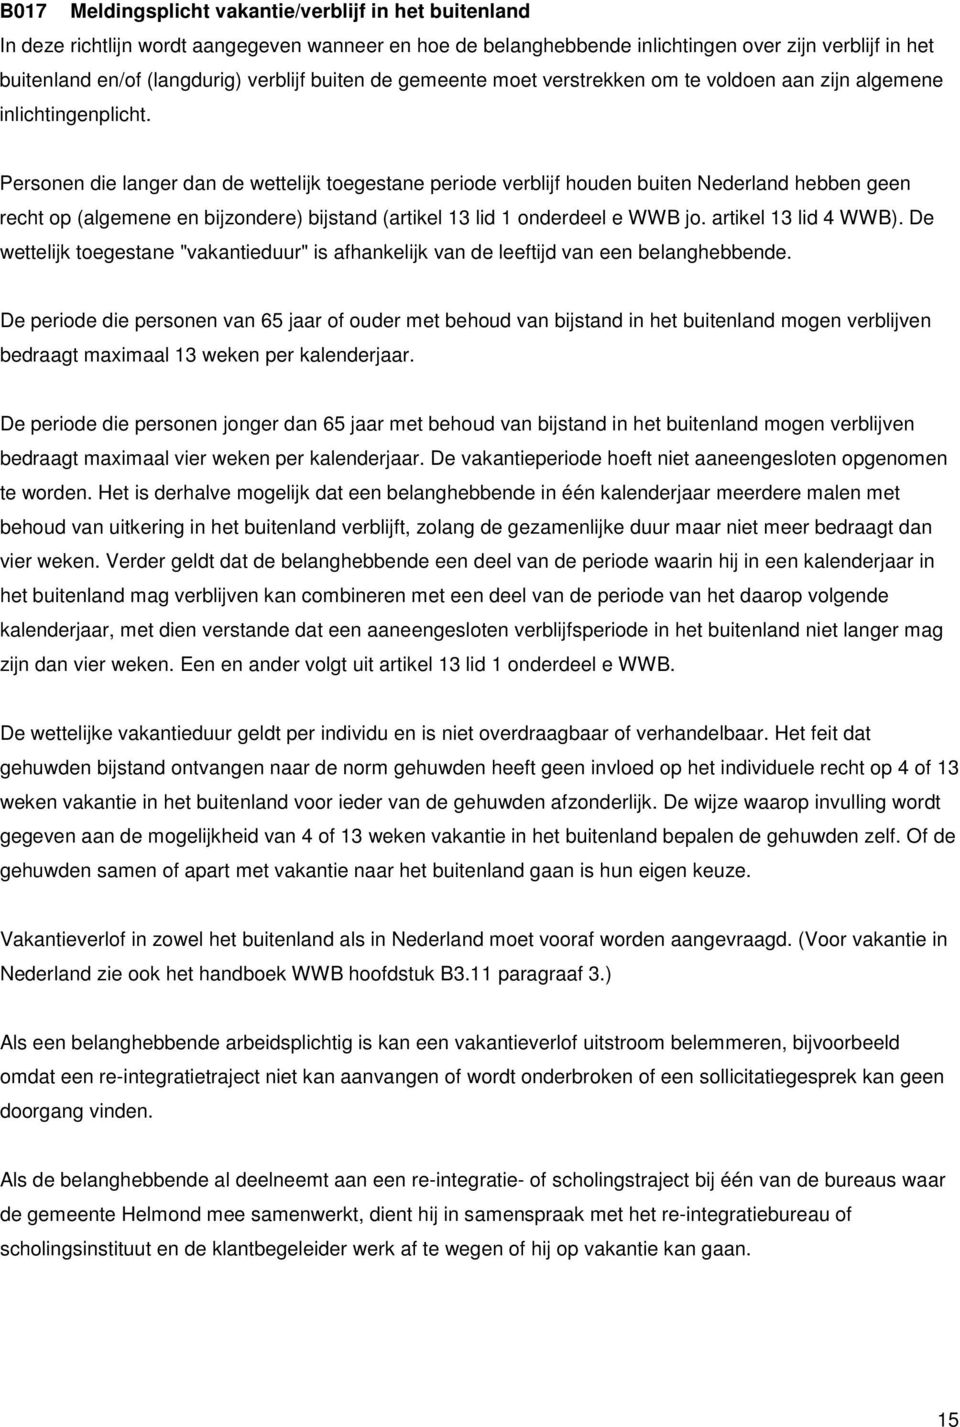 Personen die langer dan de wettelijk toegestane periode verblijf houden buiten Nederland hebben geen recht op (algemene en bijzondere) bijstand (artikel 13 lid 1 onderdeel e WWB jo.